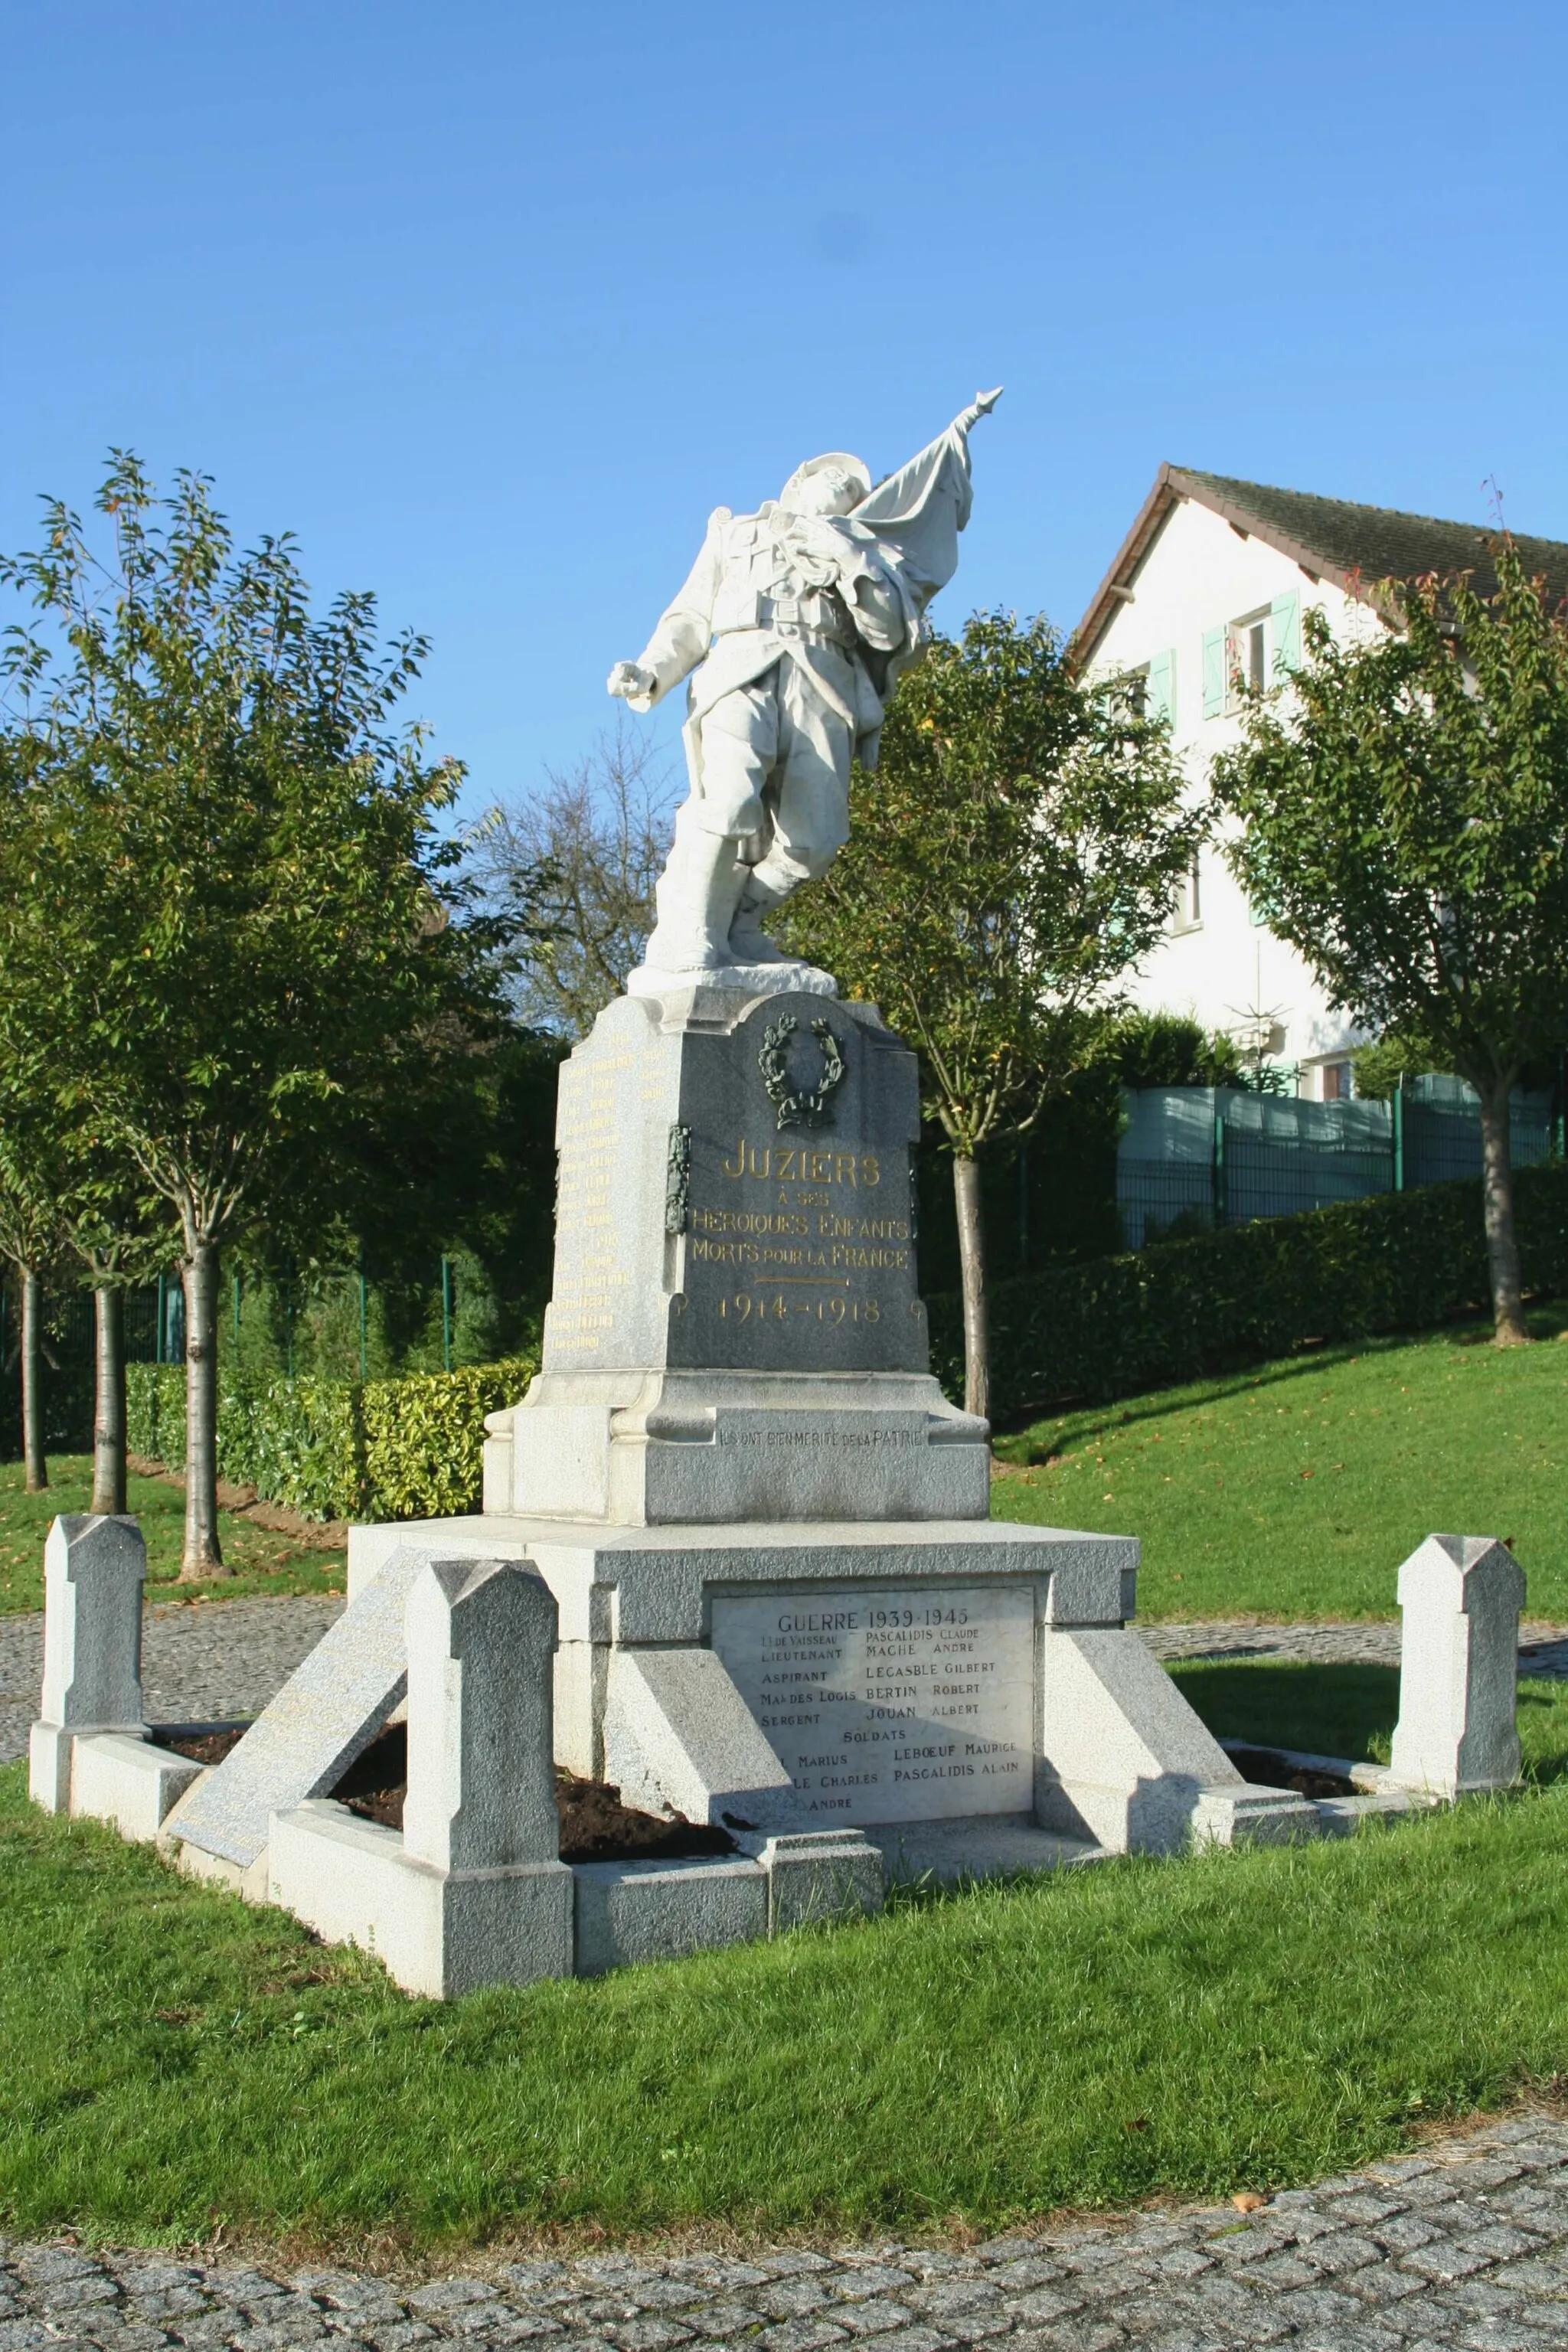 Photo showing: Monument aux morts de Juziers - Yvelines (France)